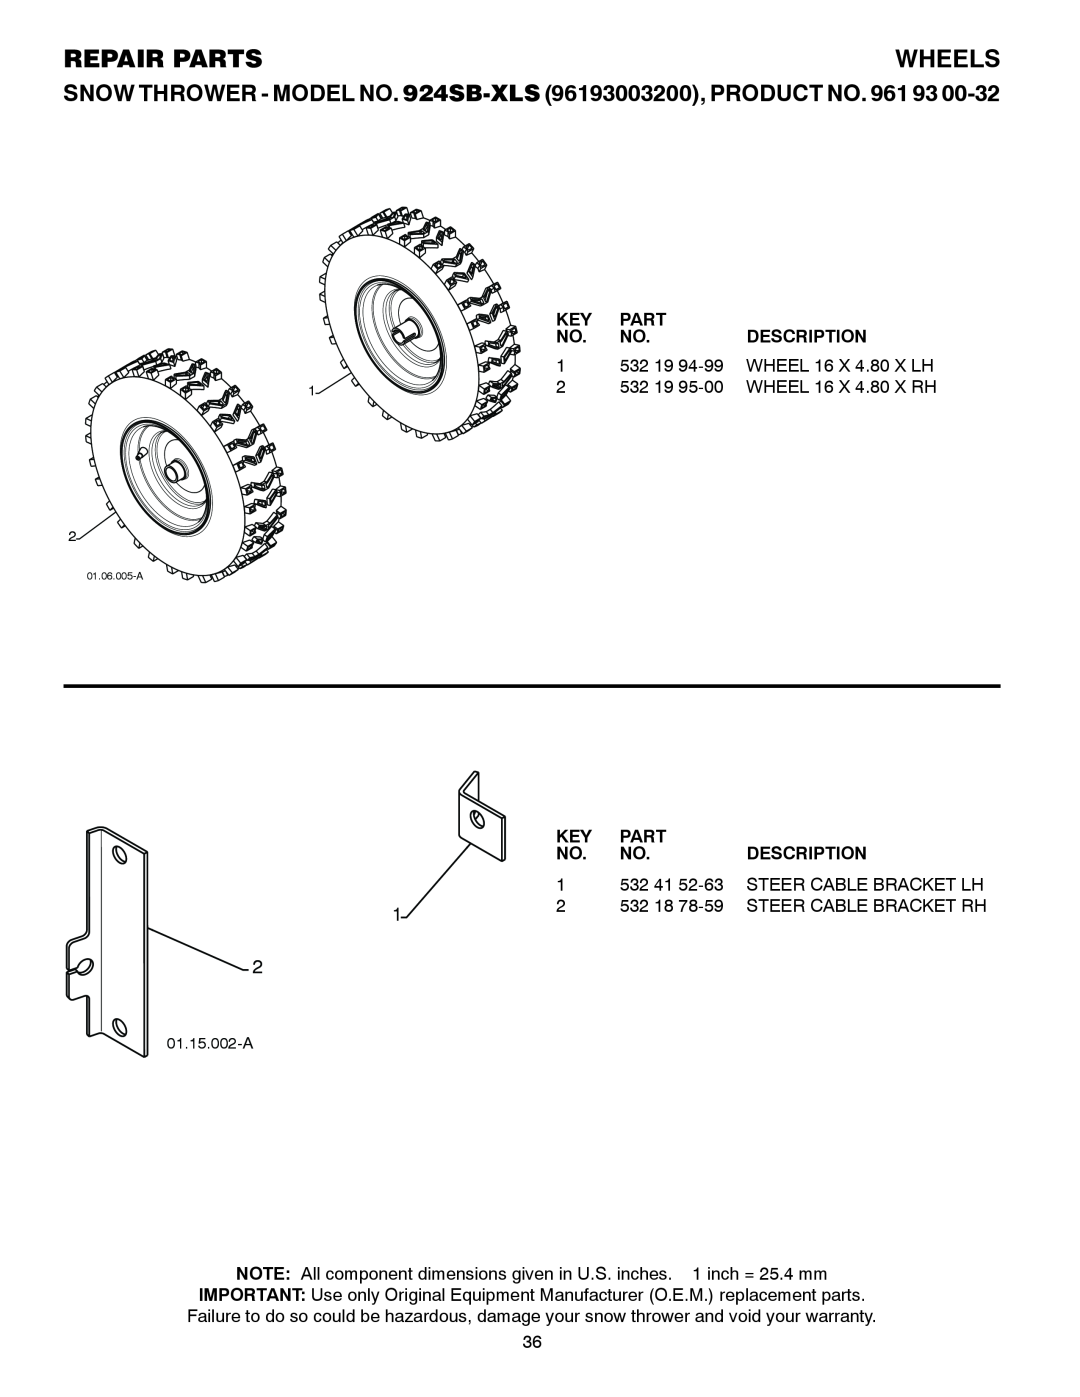 Husqvarna 924SB-XLS owner manual Wheels, Repair Parts, Description 